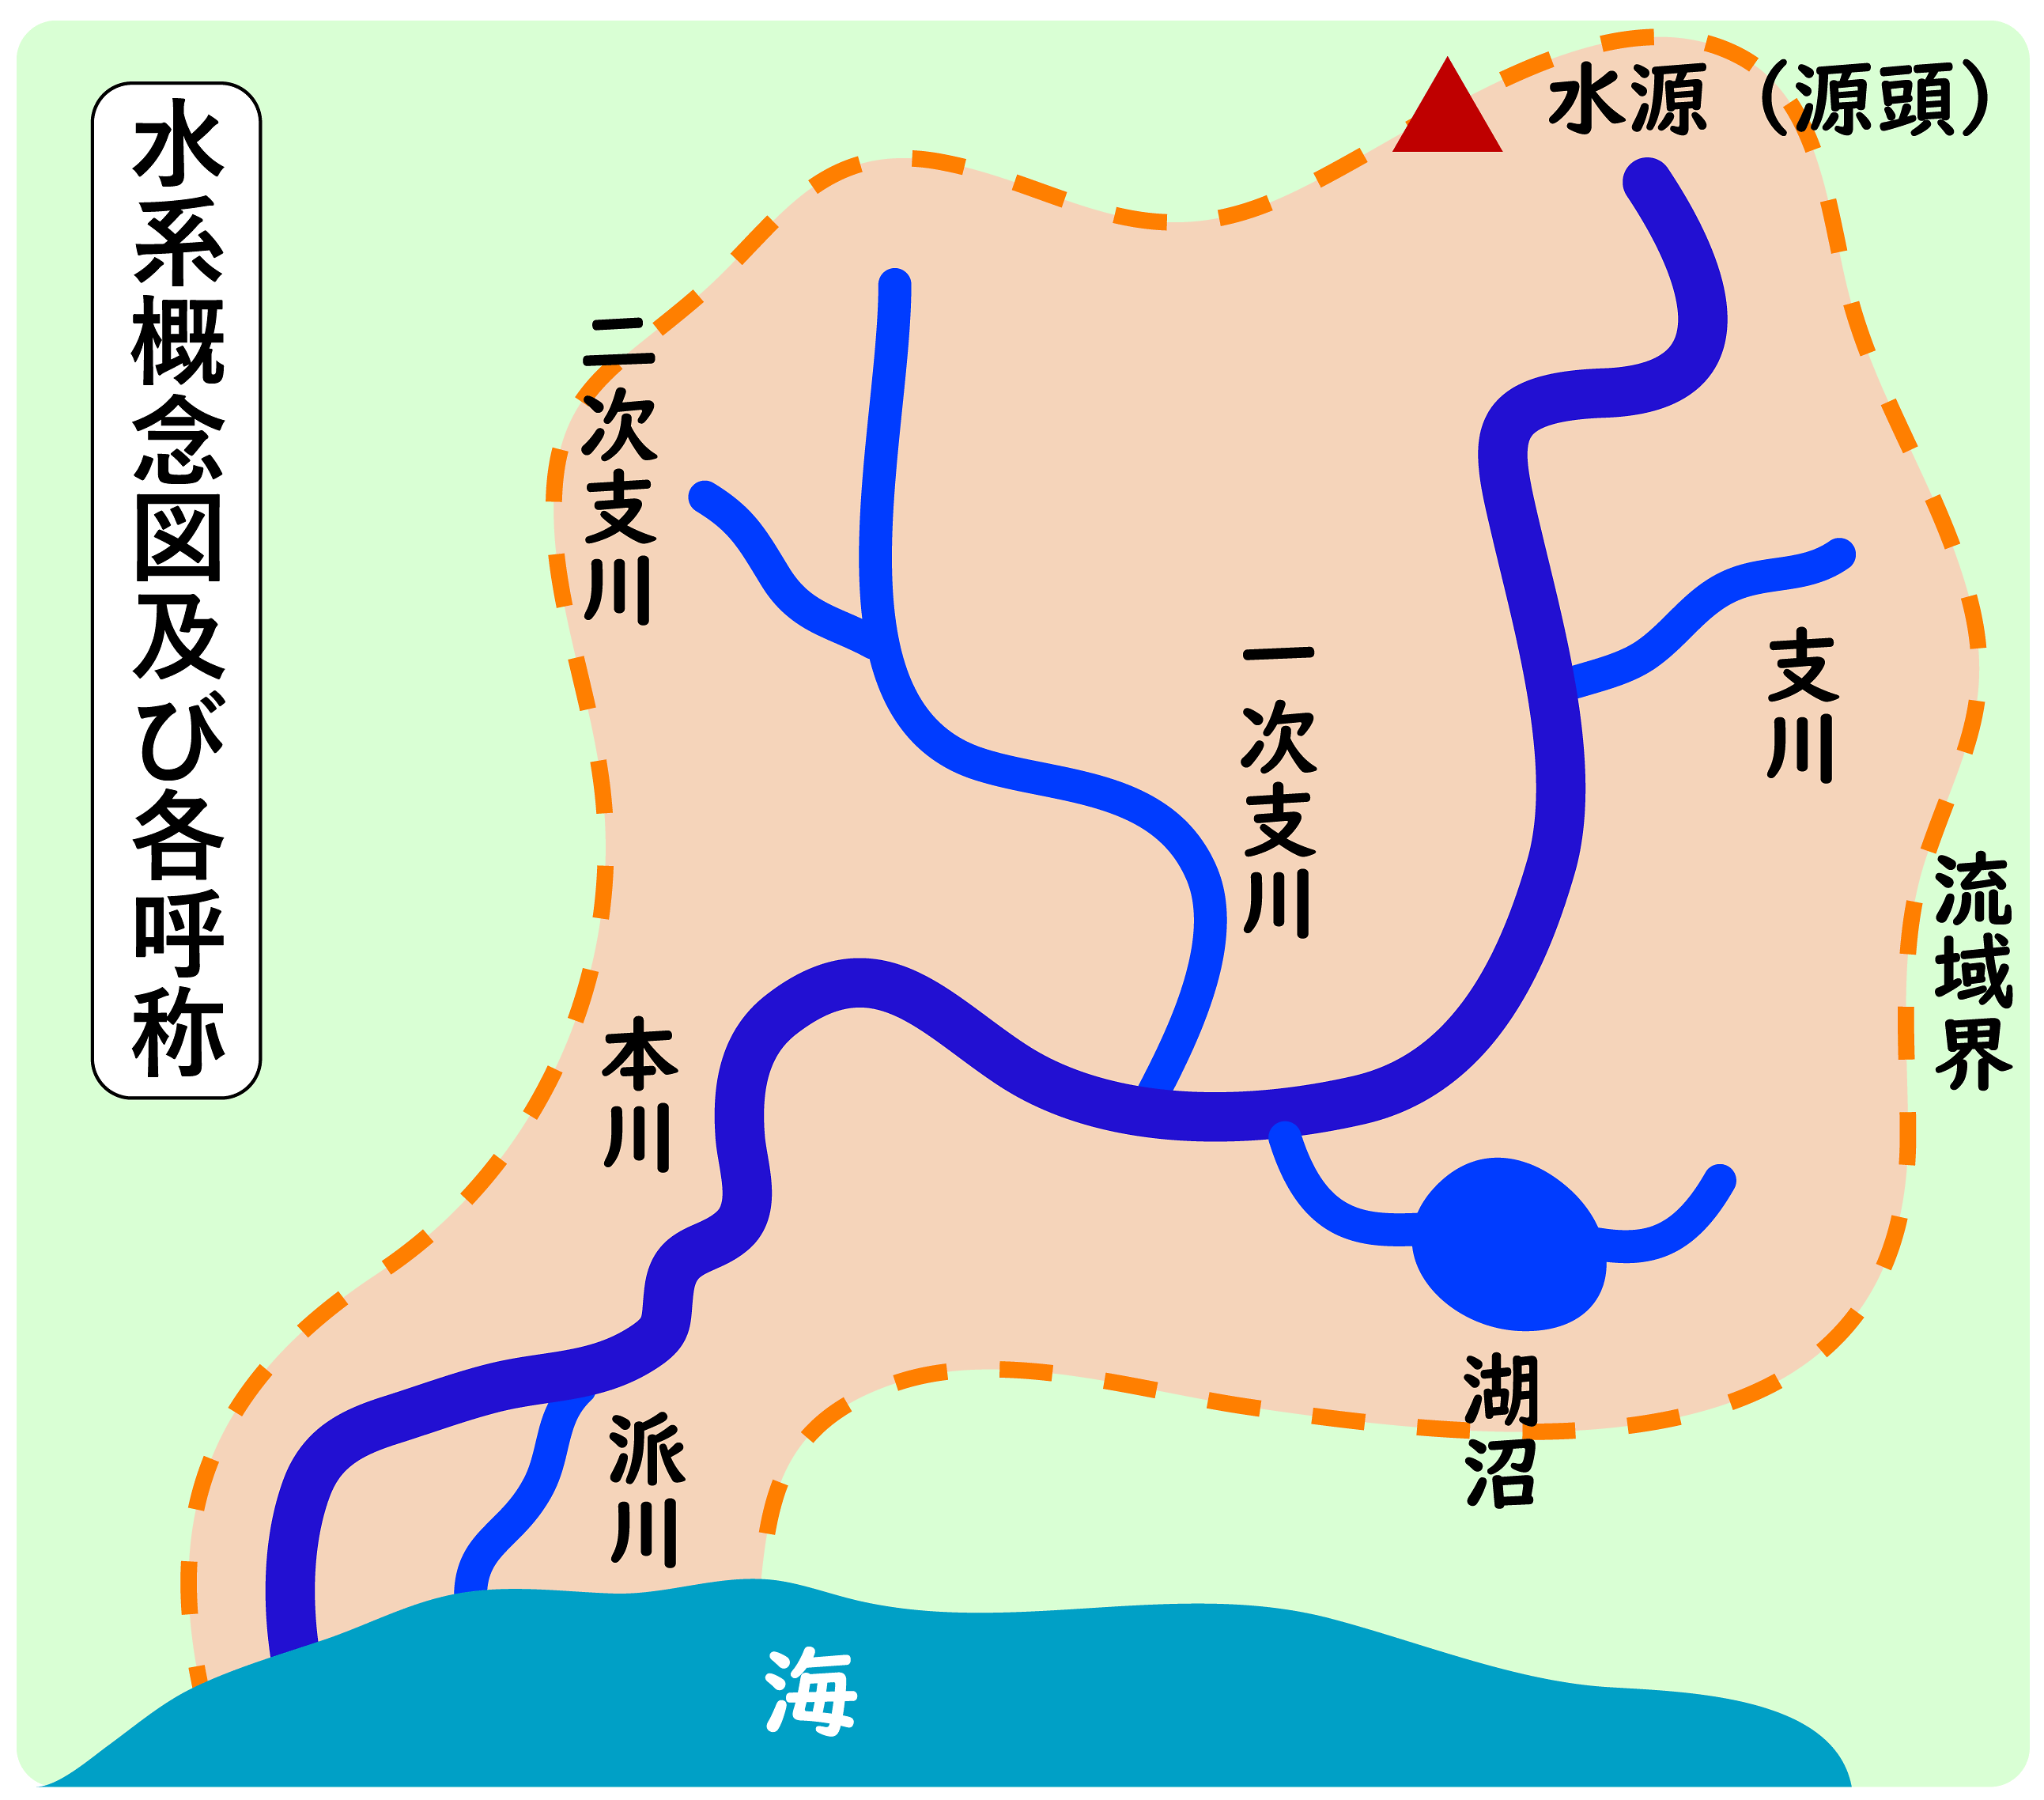 日本主要河川 流域面積 支川数ランキング 人文科学の雜錄帖